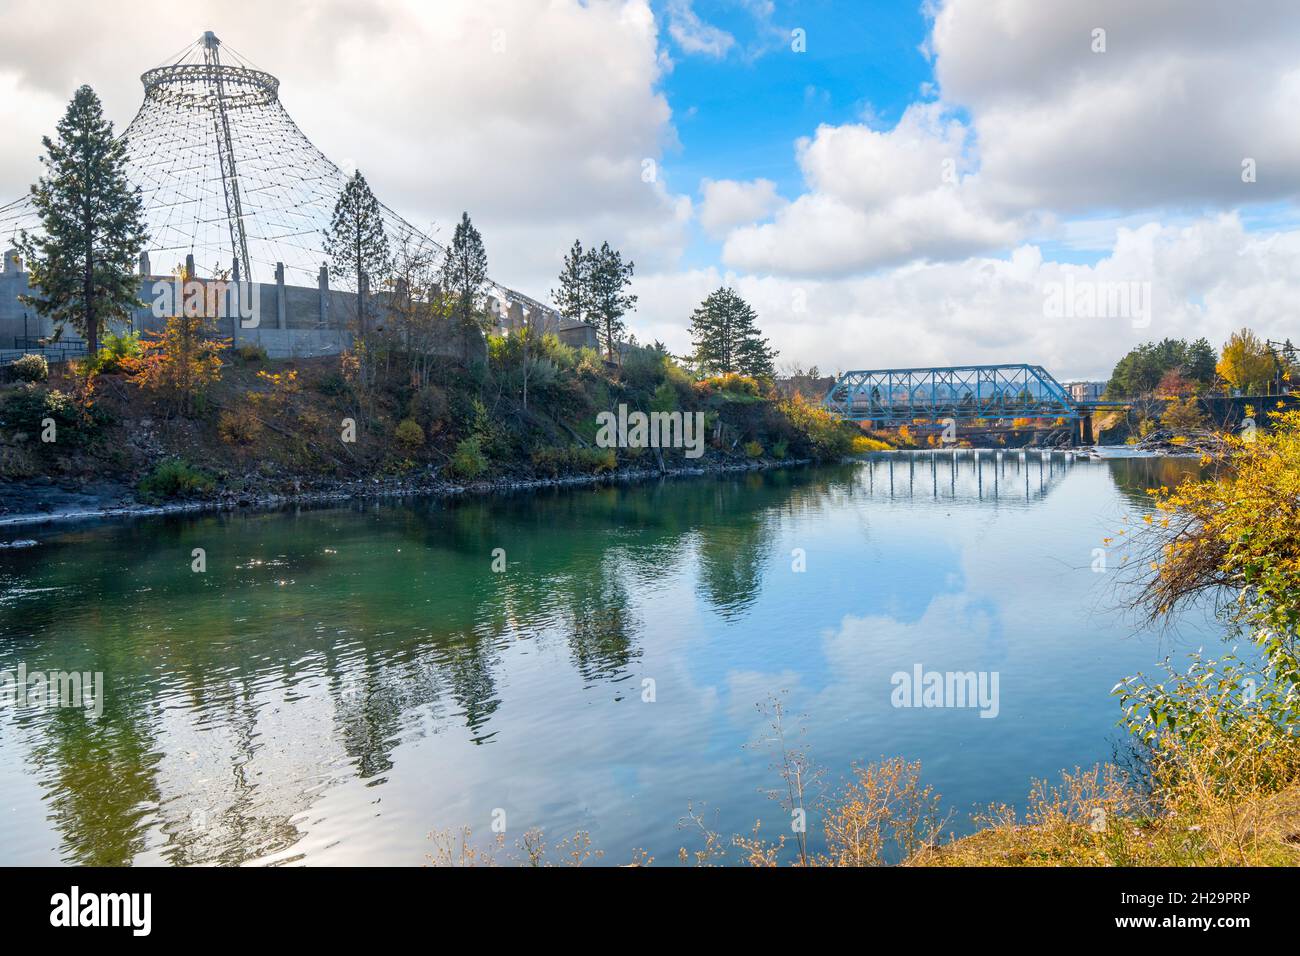 Spokane River en el centro de Spokane, Washington, Estados Unidos, junto al Riverfront Park y el pabellón con el Blue Bridge a la vista. Foto de stock